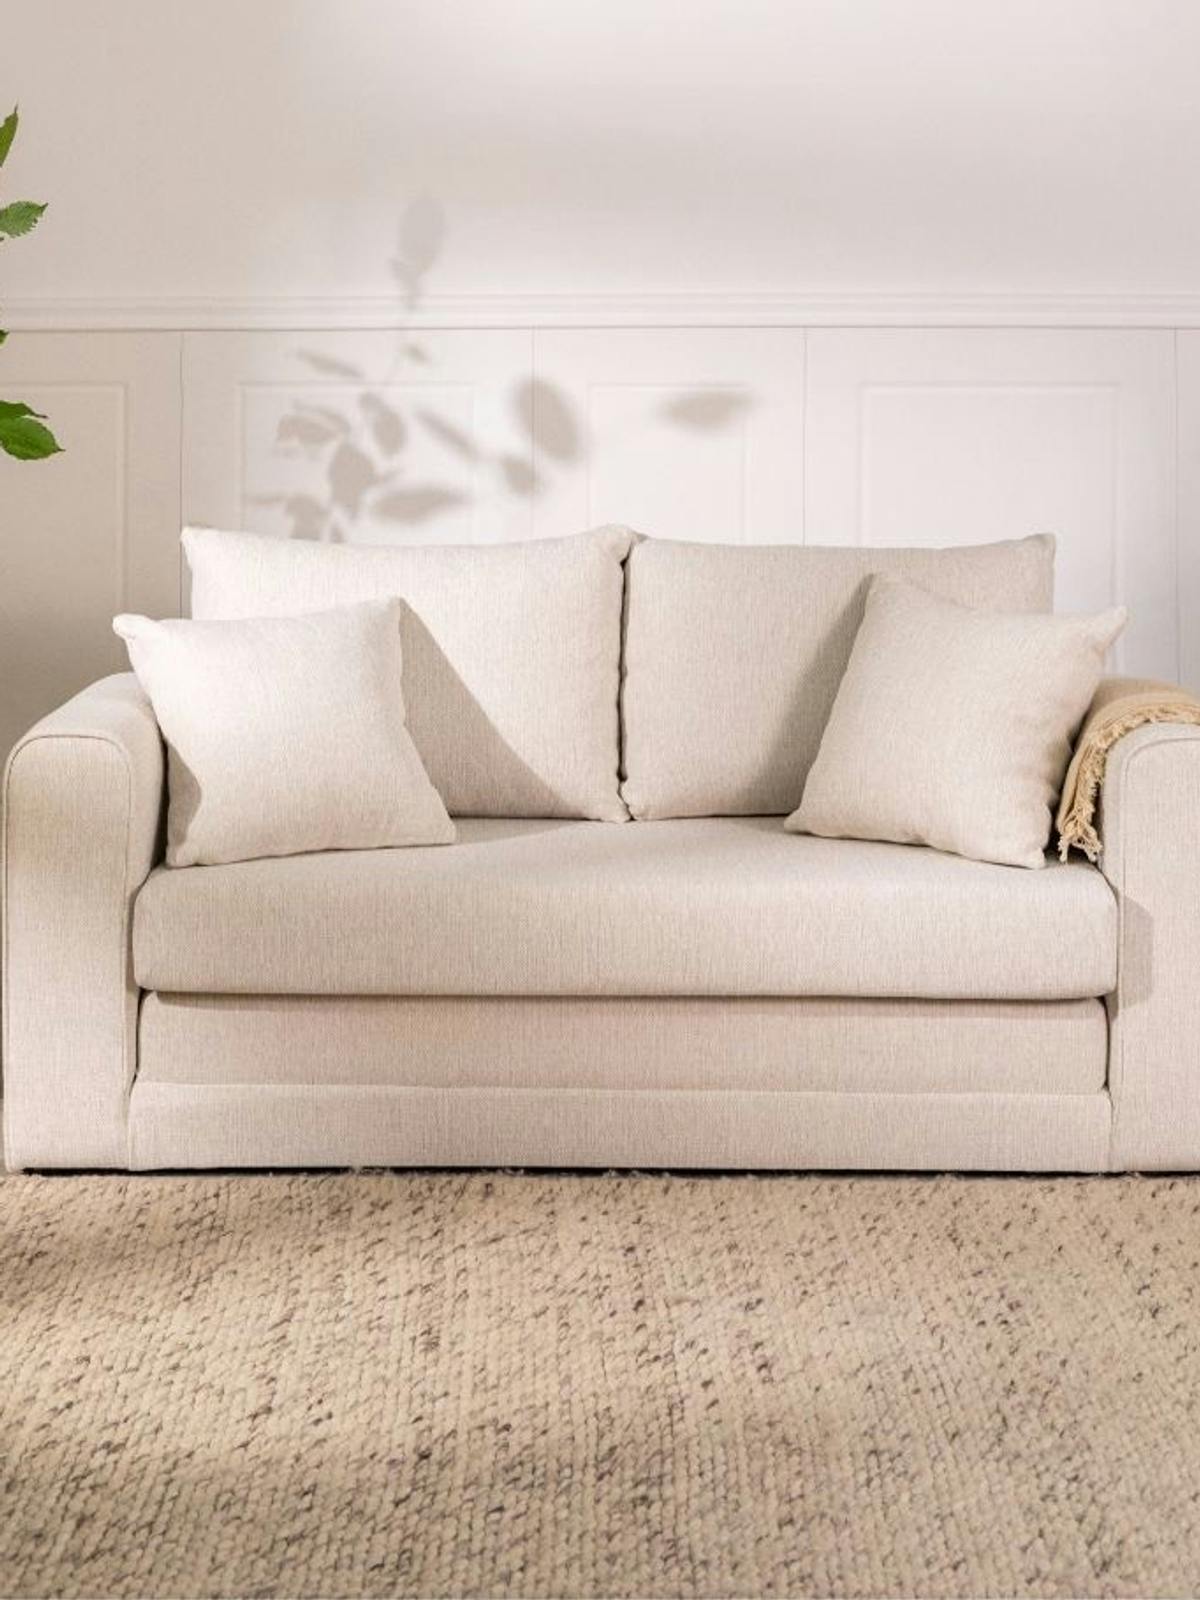 Dom w stylu wabi sabi to beżowa kanapa i minimalistyczne dekoracje